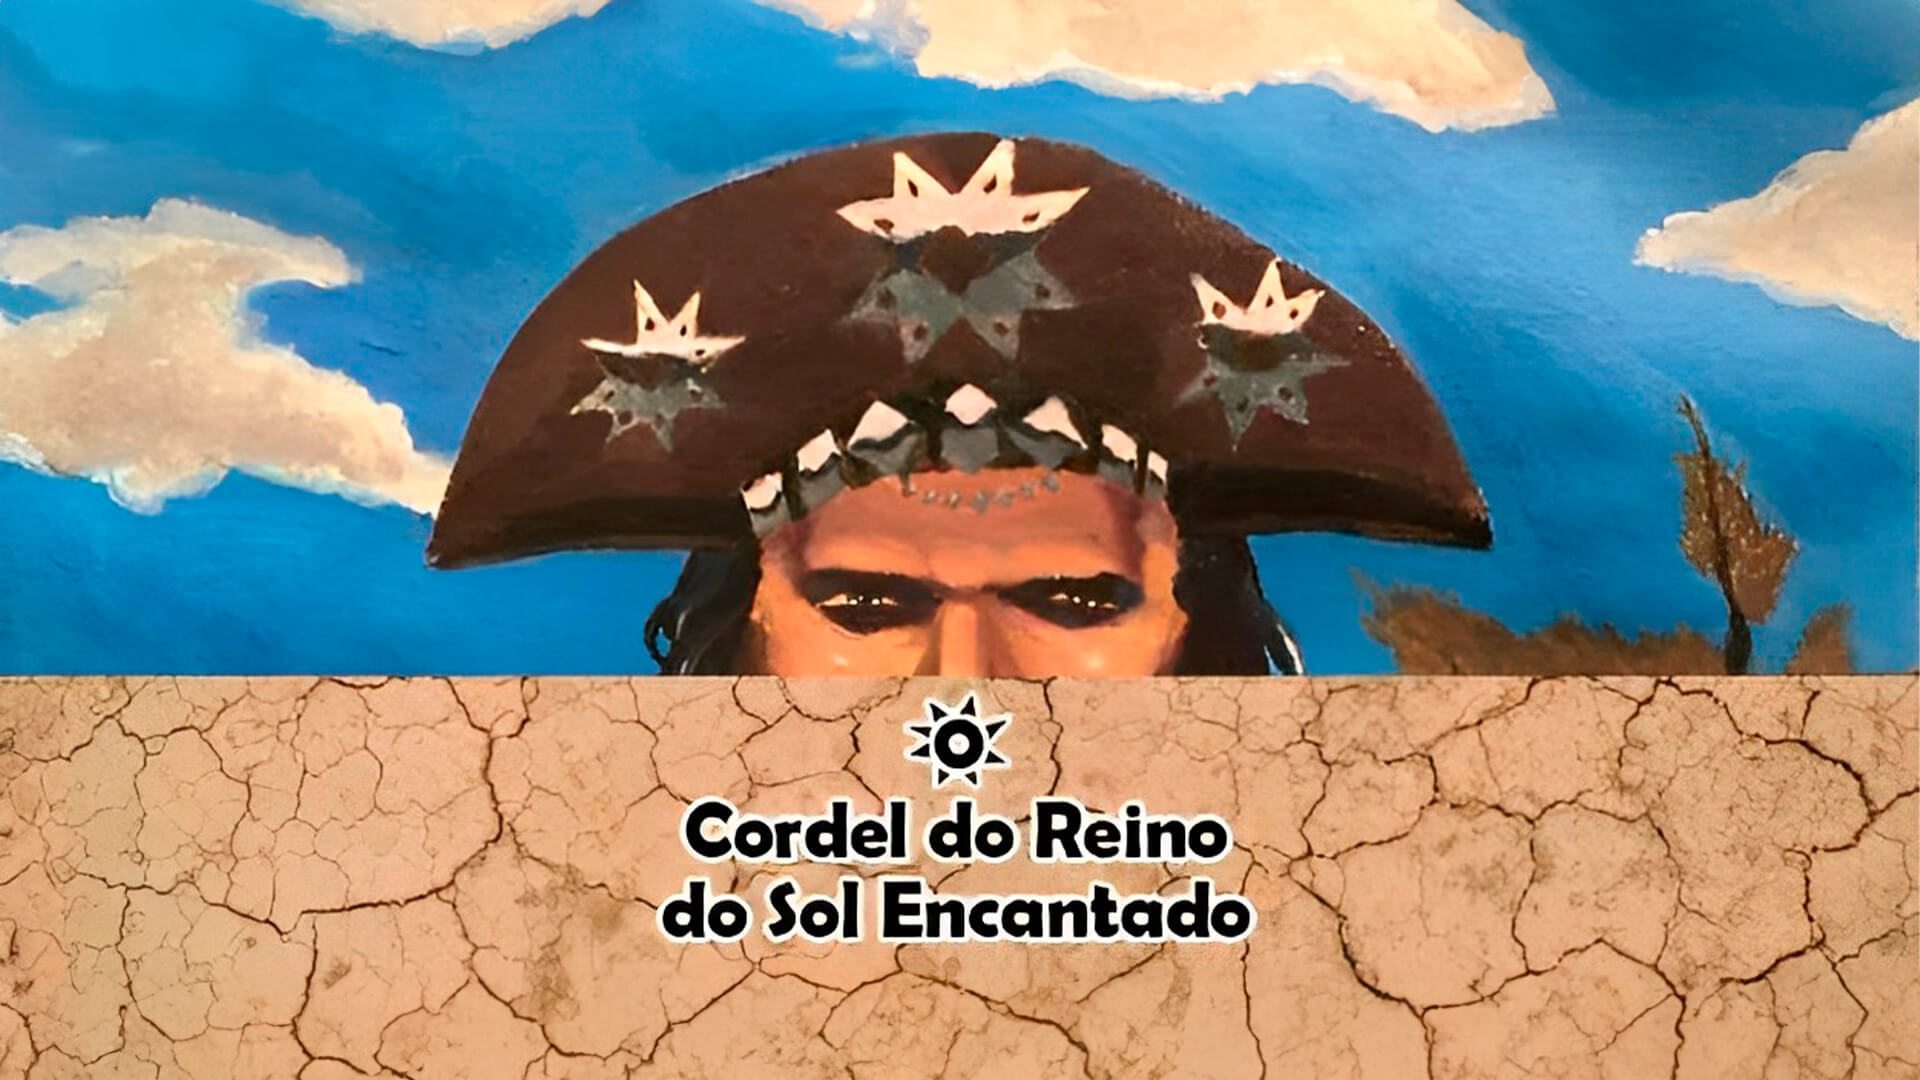 Cordel RPG – Aventuras Fantásticas no Sertão Nordestino